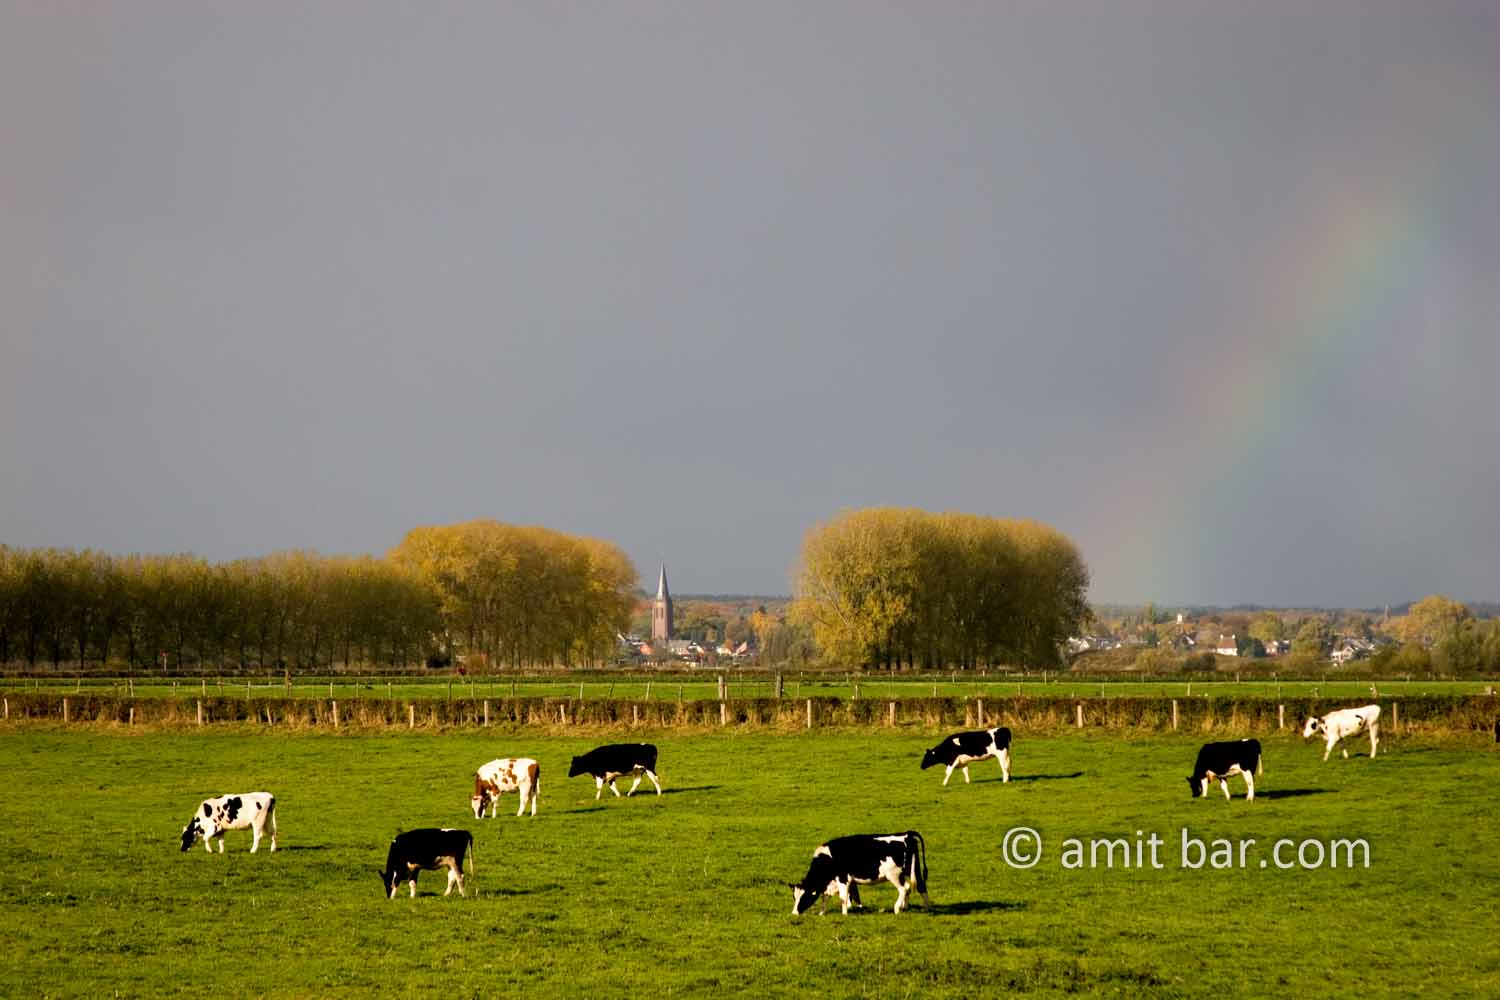 Rainbow above Dieren: Rainbow above DIeren, The Netherlands